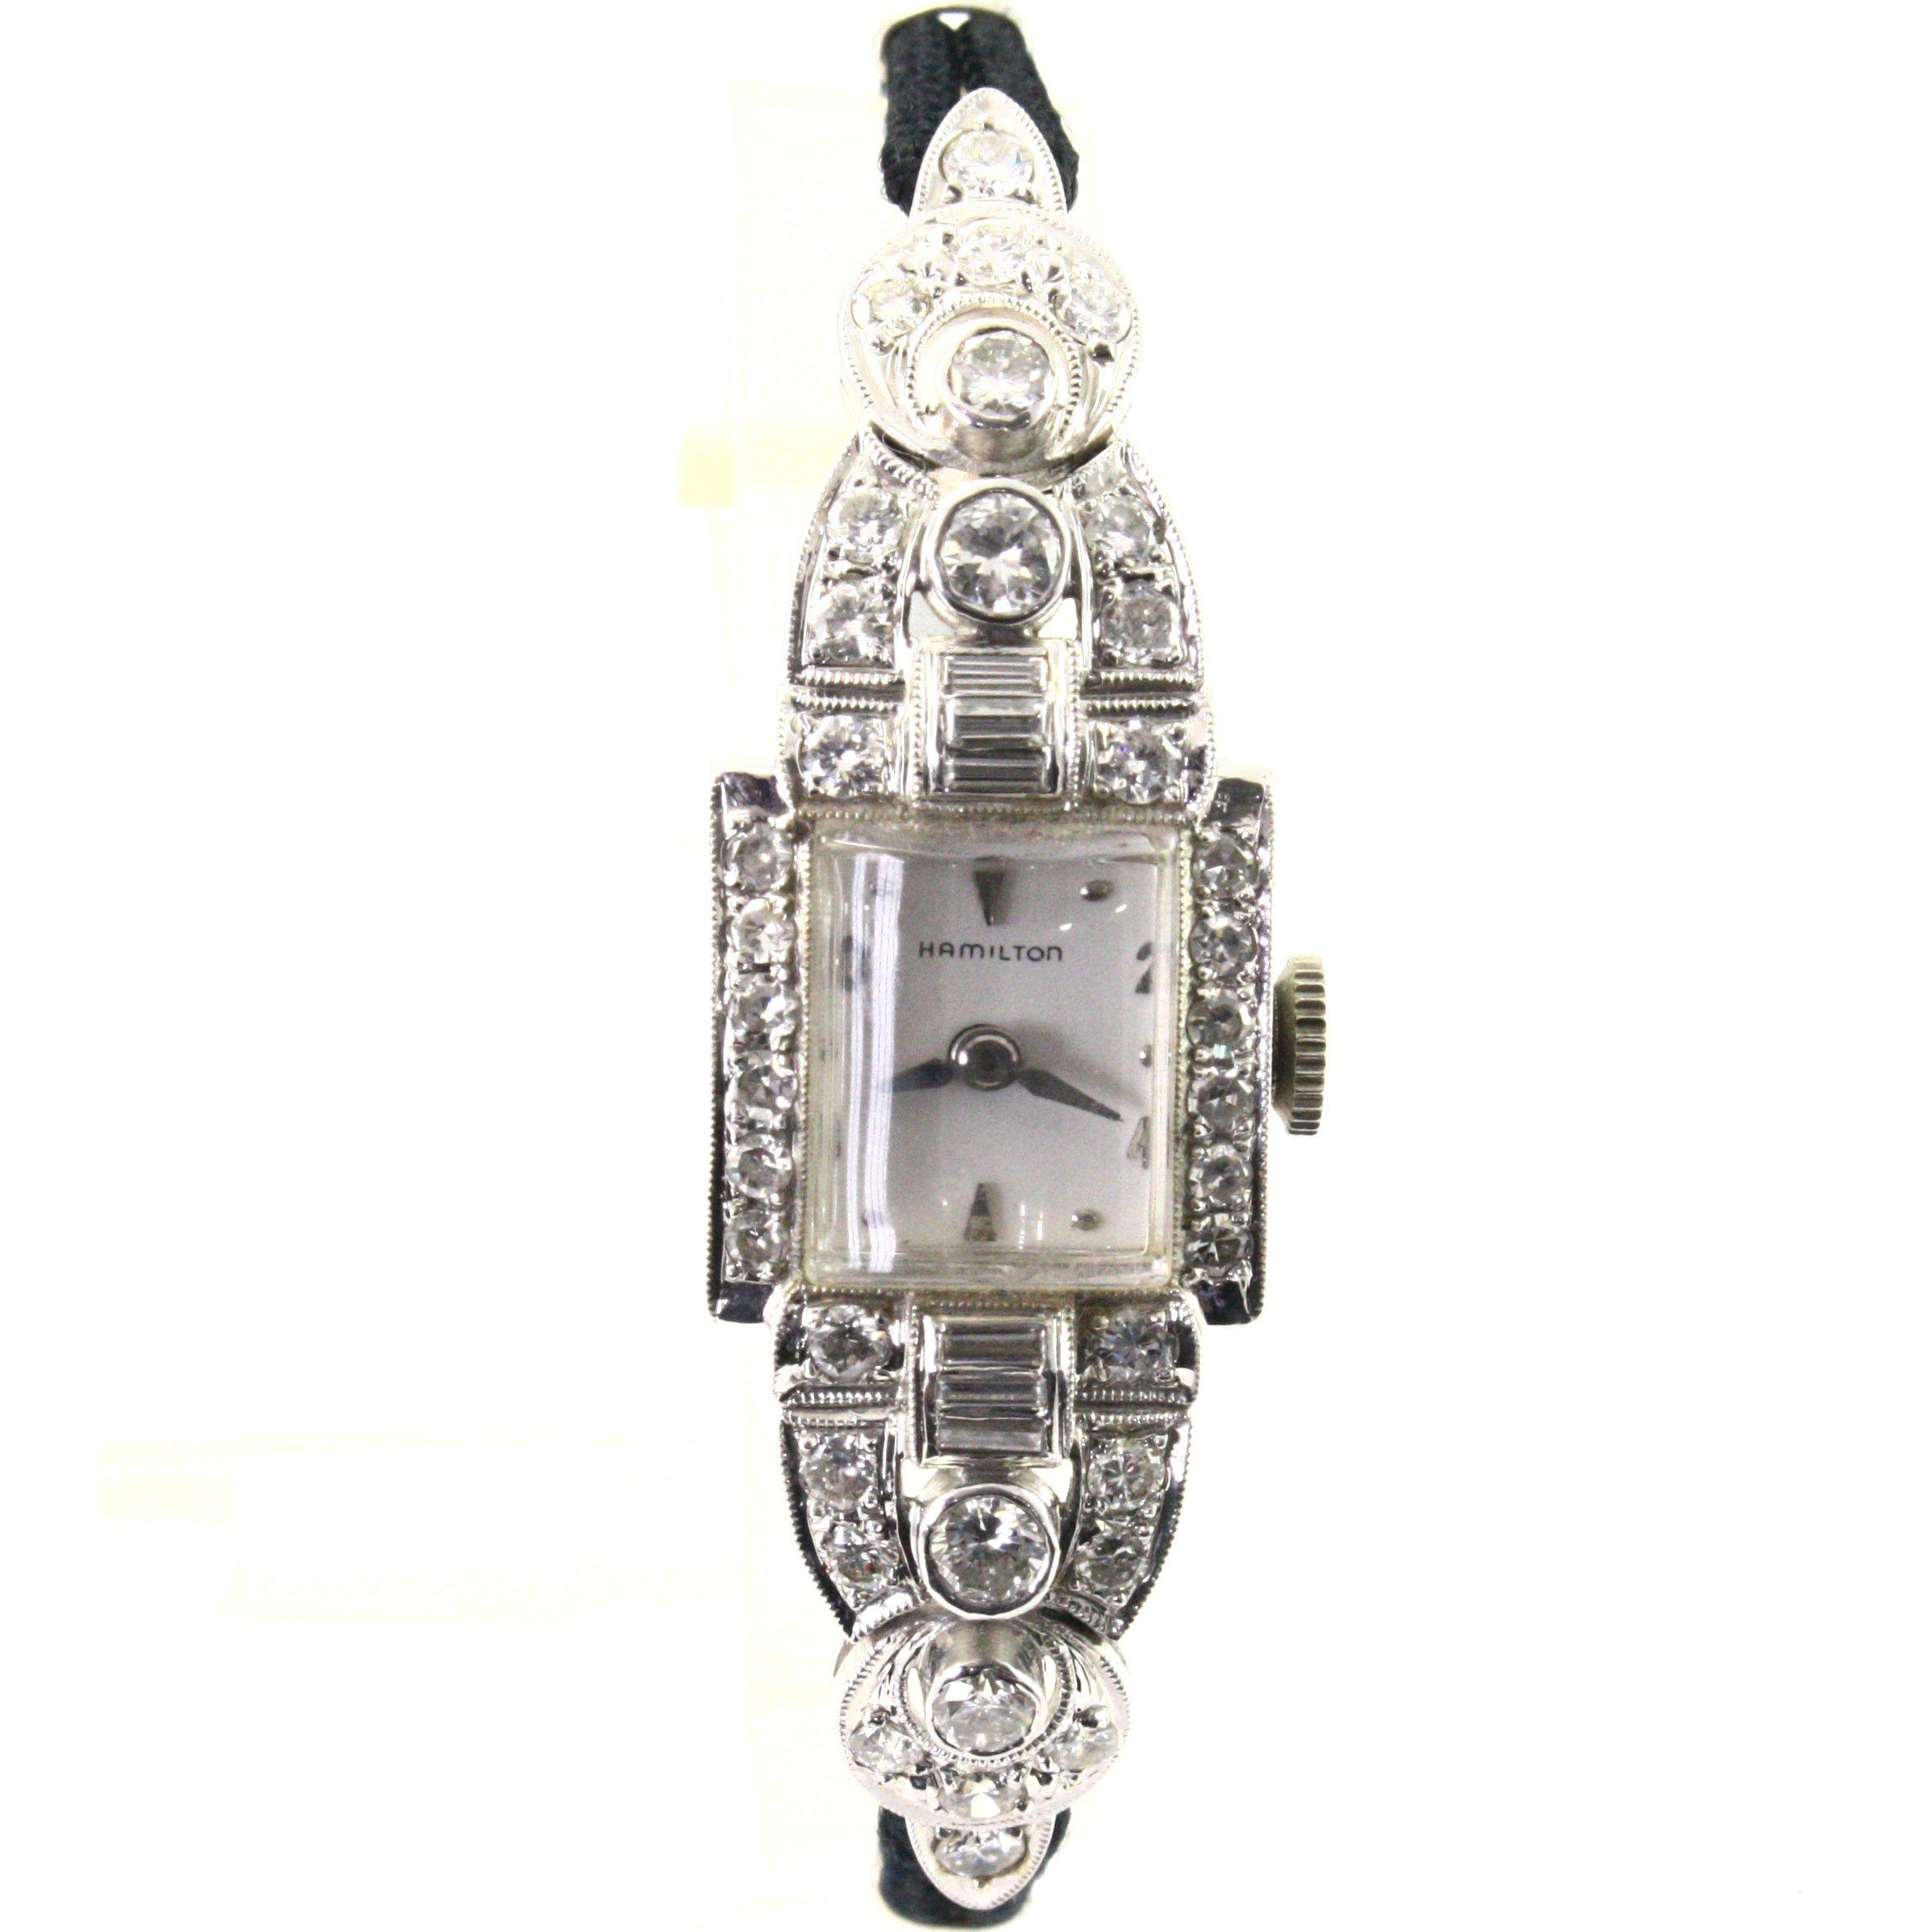 Like-new 22-jewel Hamilton 14K white gold diamond wristwatch